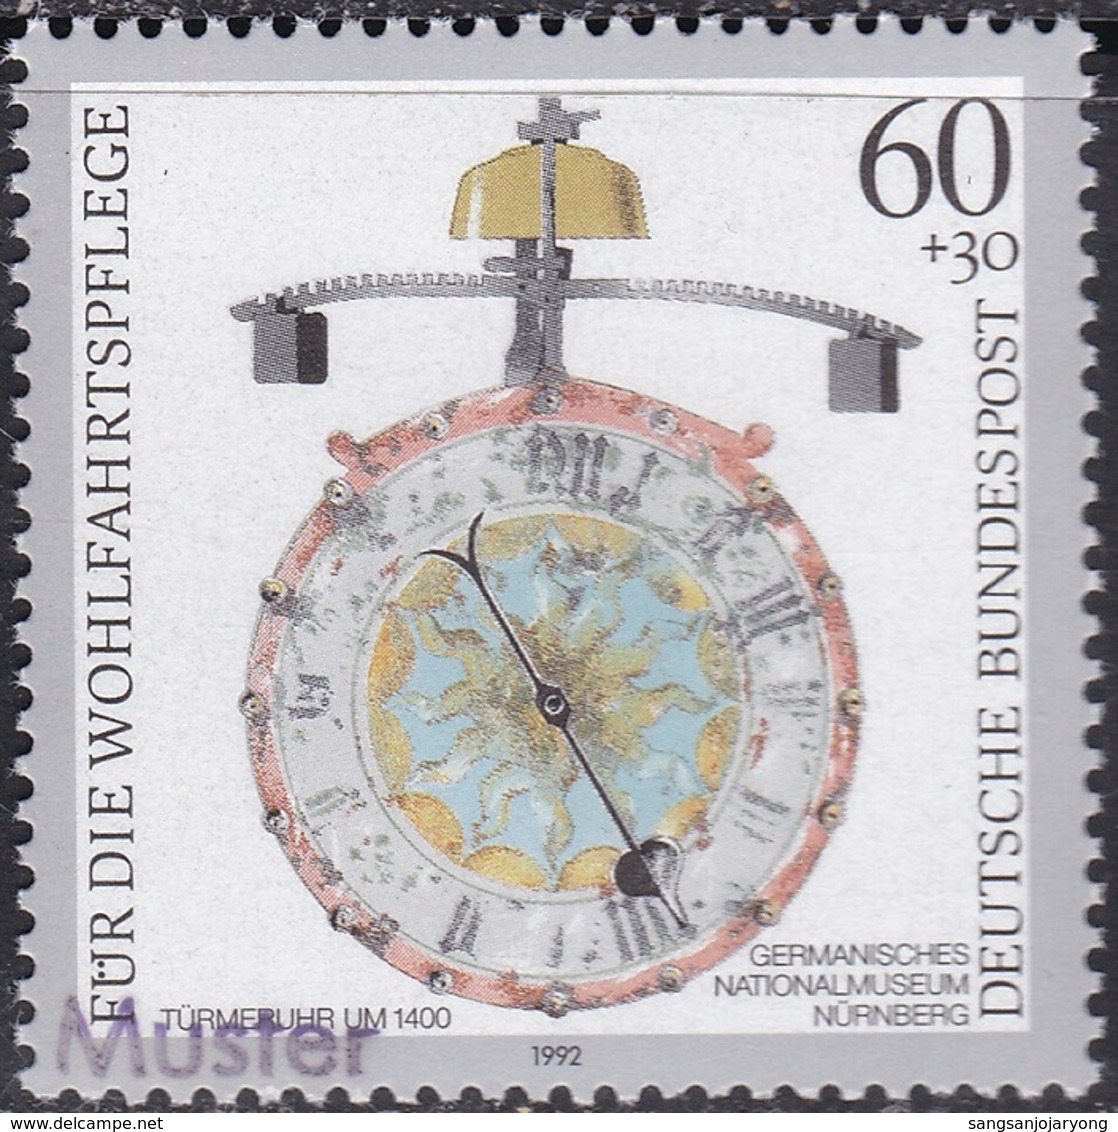 Specimen, Germany ScB734 Antique Clock, Turret (c. 1400), Horloge - Horloges